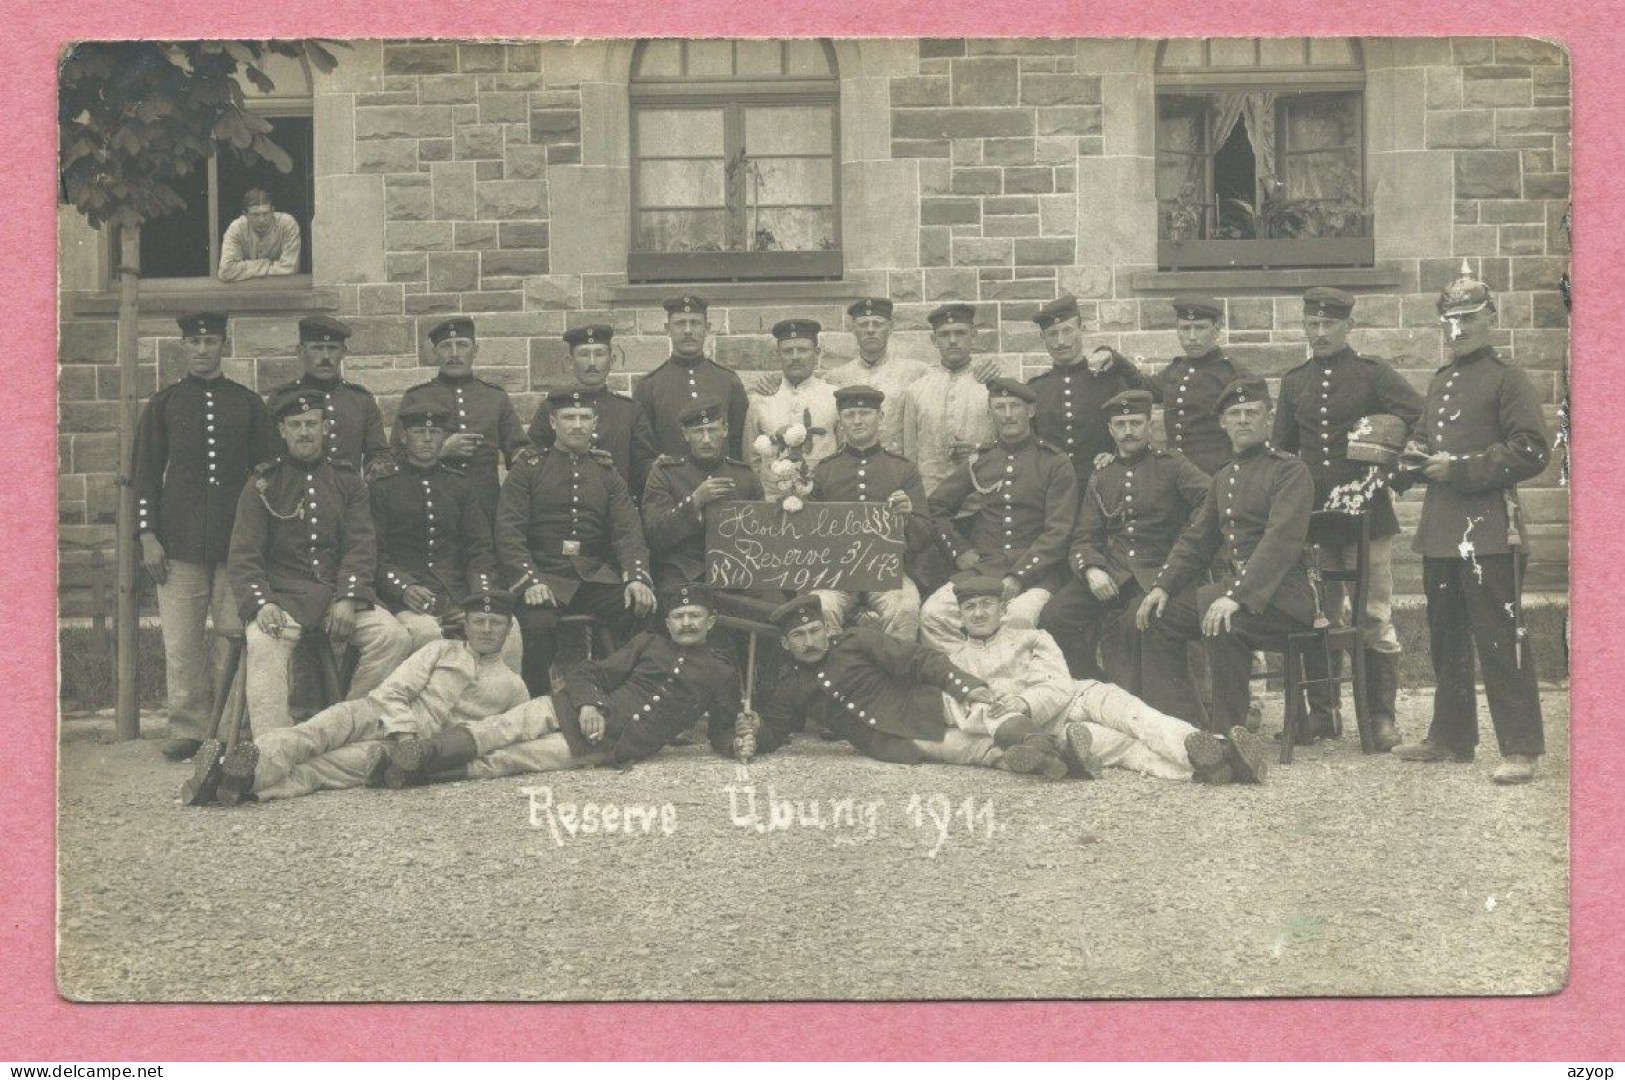 68 - NEUBREISACH - NEUF BRISACH - Carte Photo - Foto - Soldats Allemands - Reserve Übung 1911 - Neuf Brisach